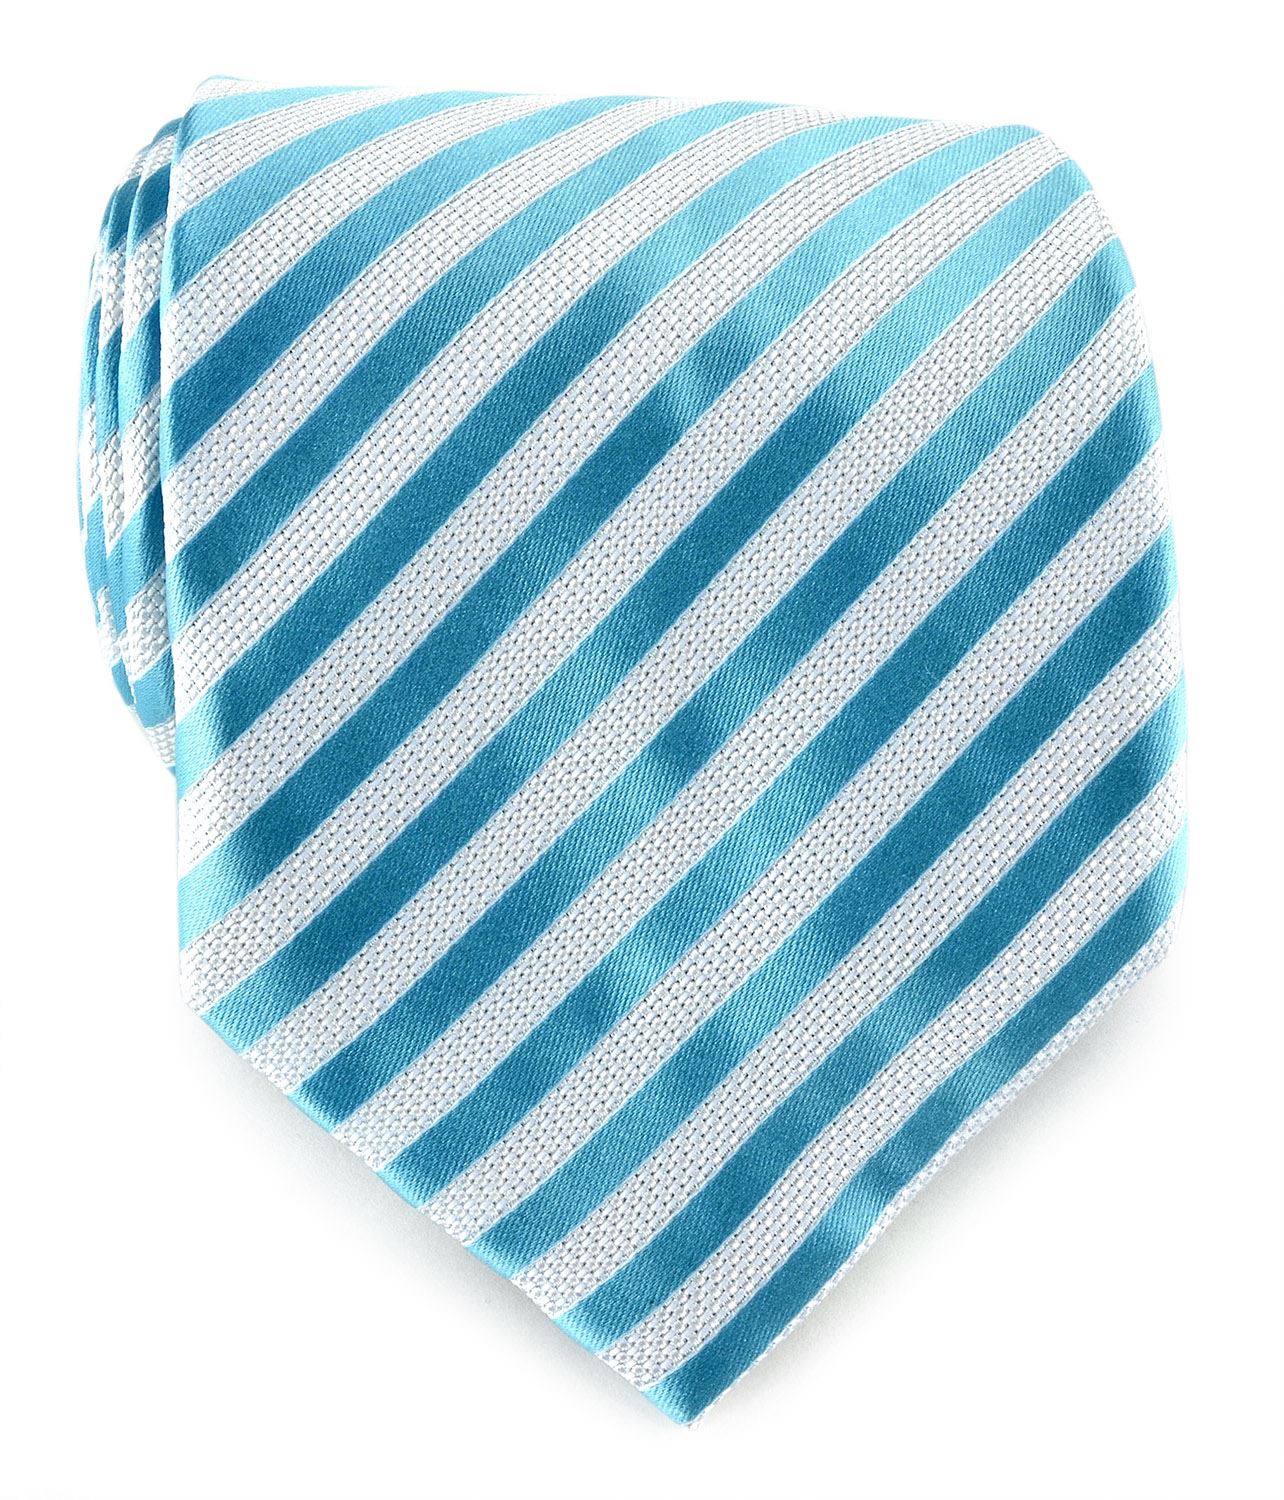 Uomo Vennetto Men's Tie - Clean Thin Striped Tie and Handkerchief Stylish Fashio - Oasis